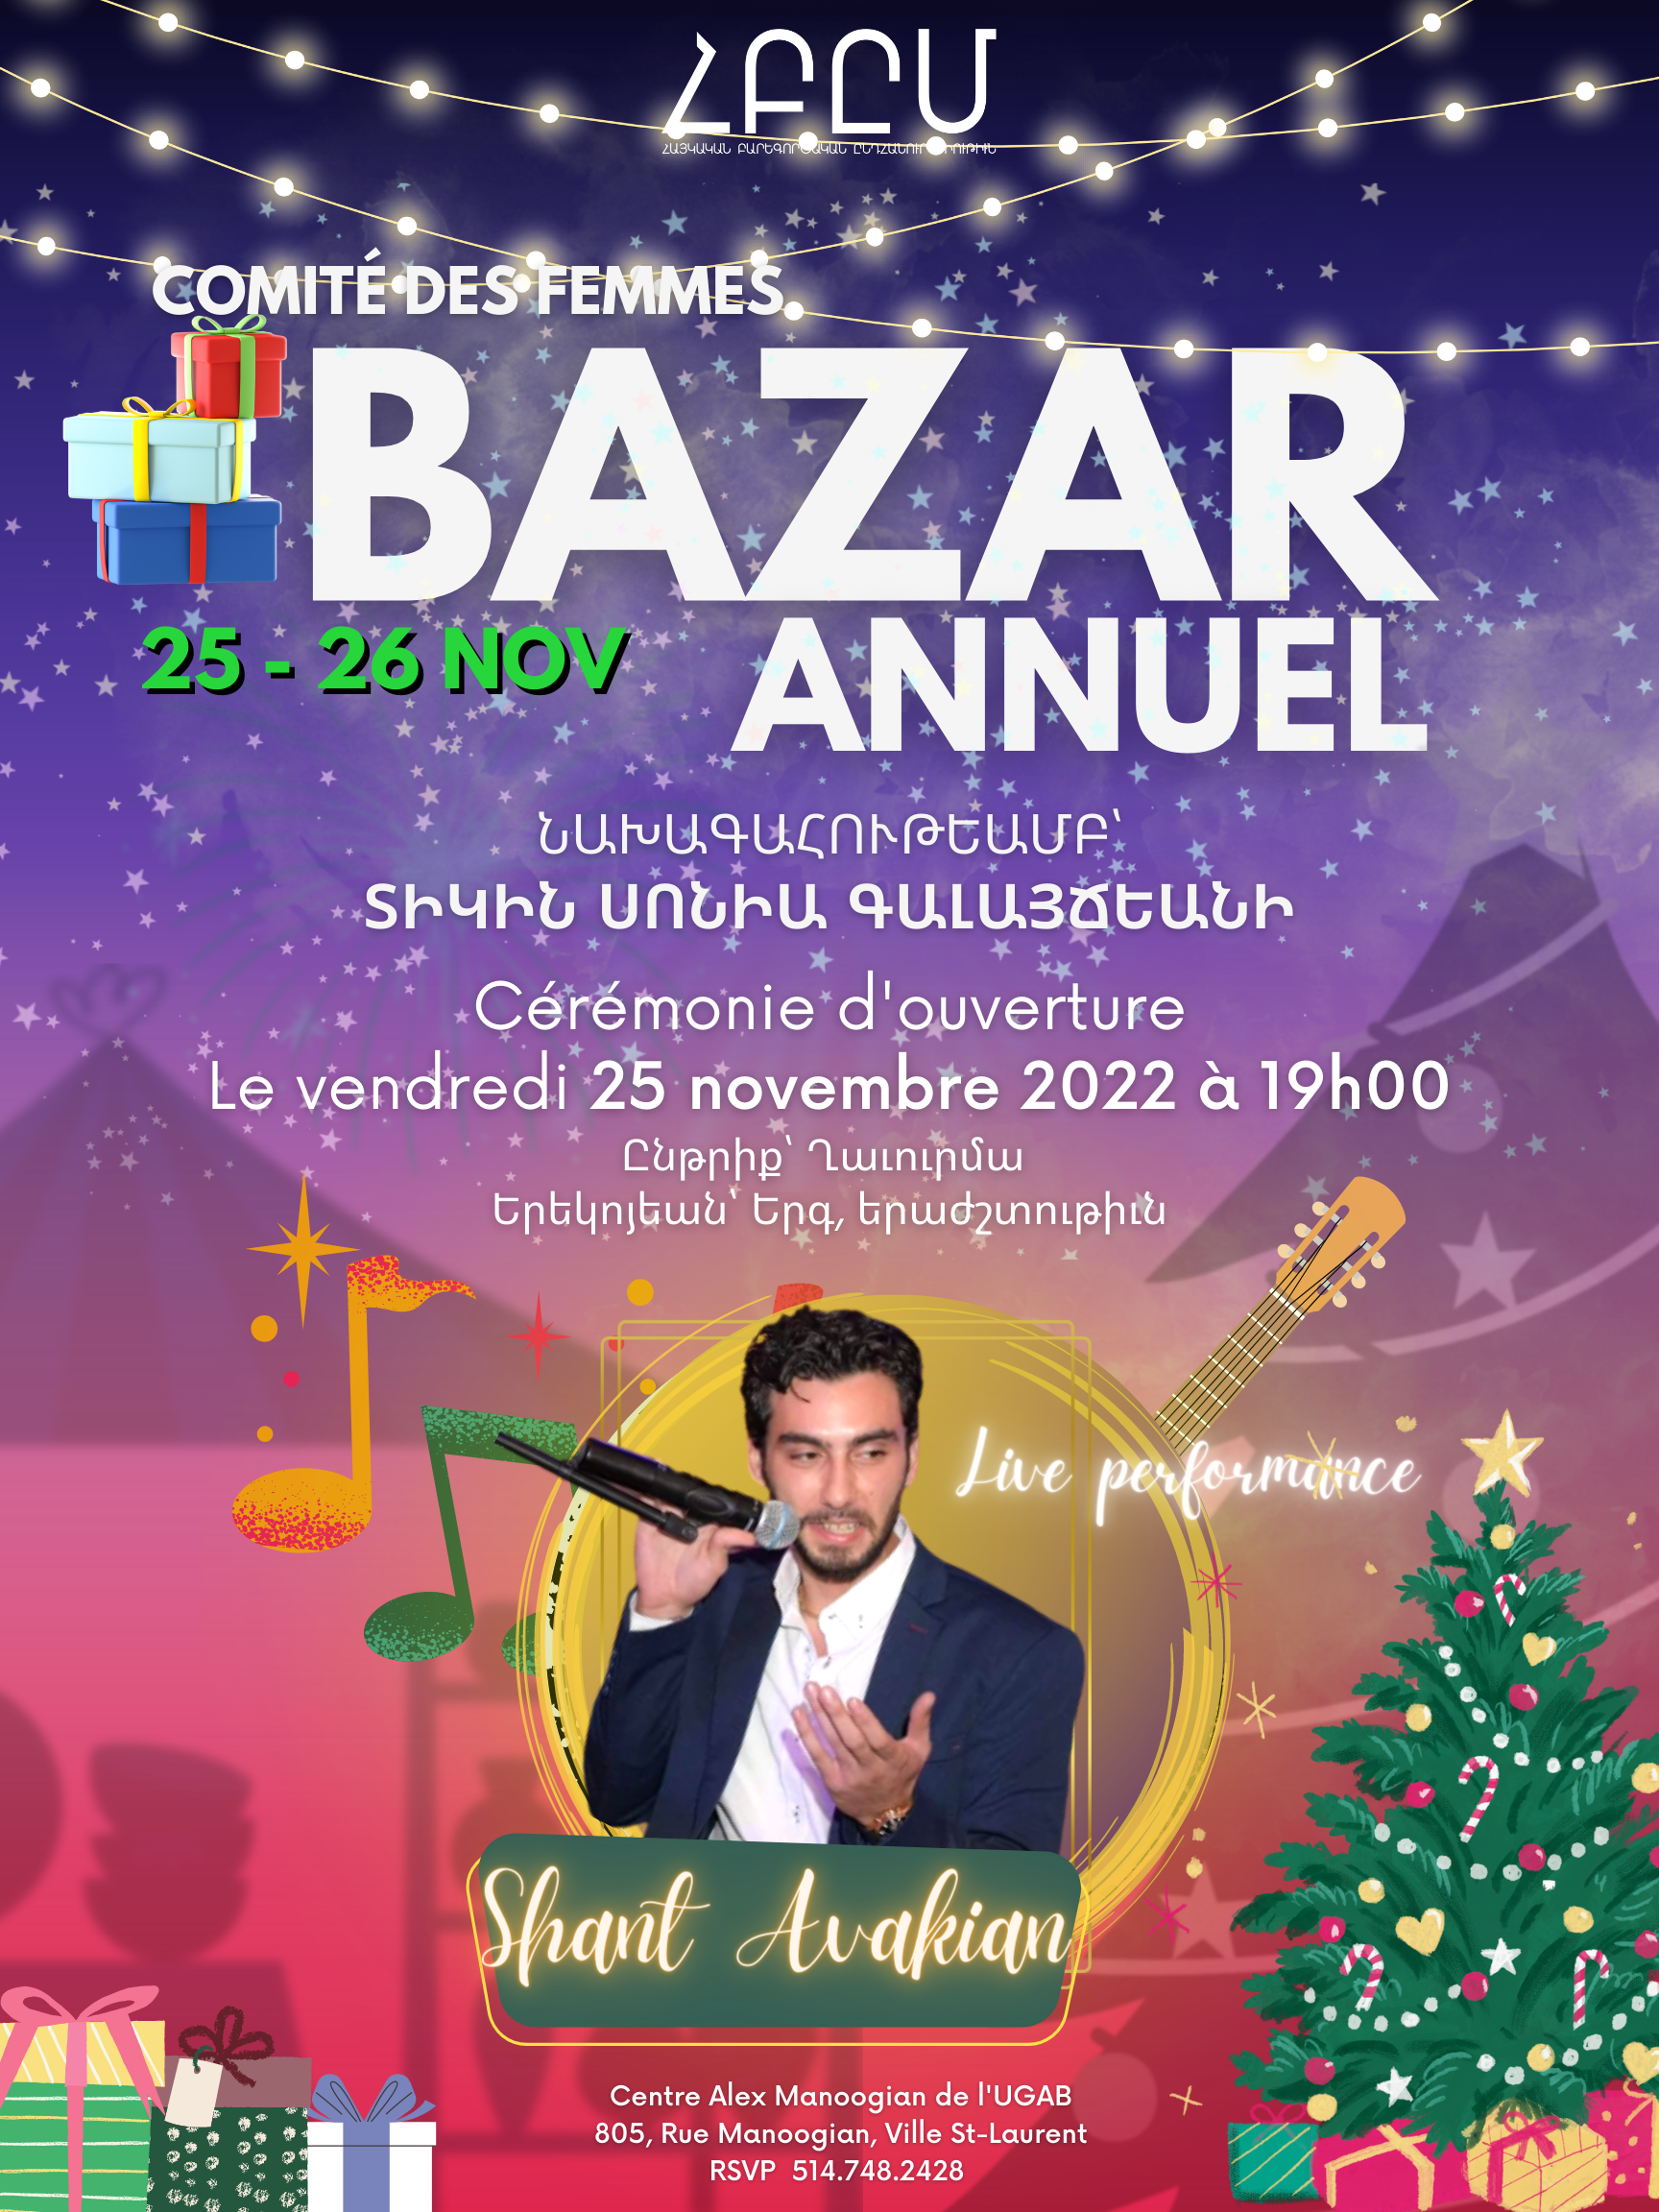 Annual Bazaar